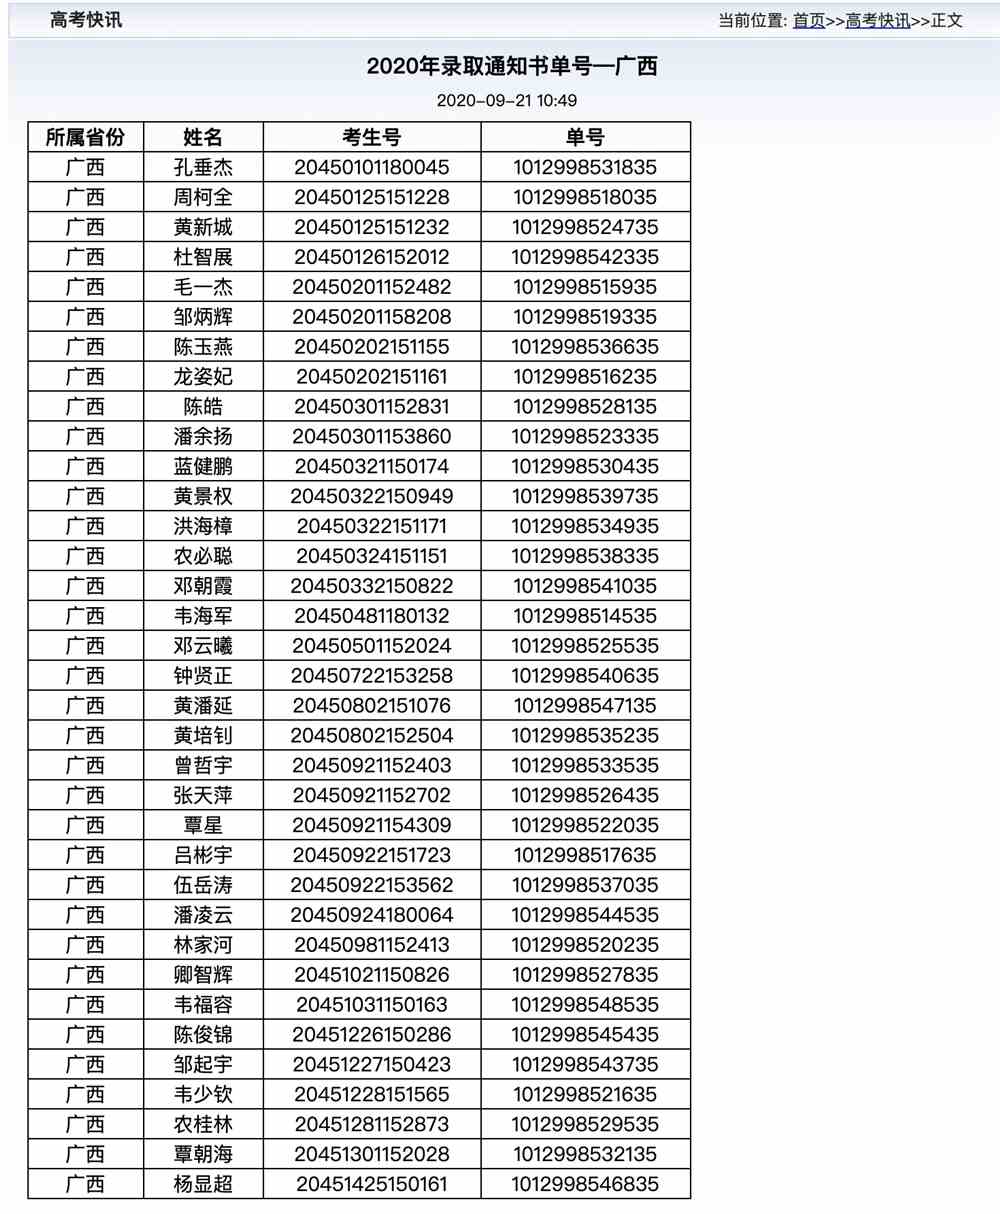 西安铁路职业技术学院2020年—广西录取通知书单号